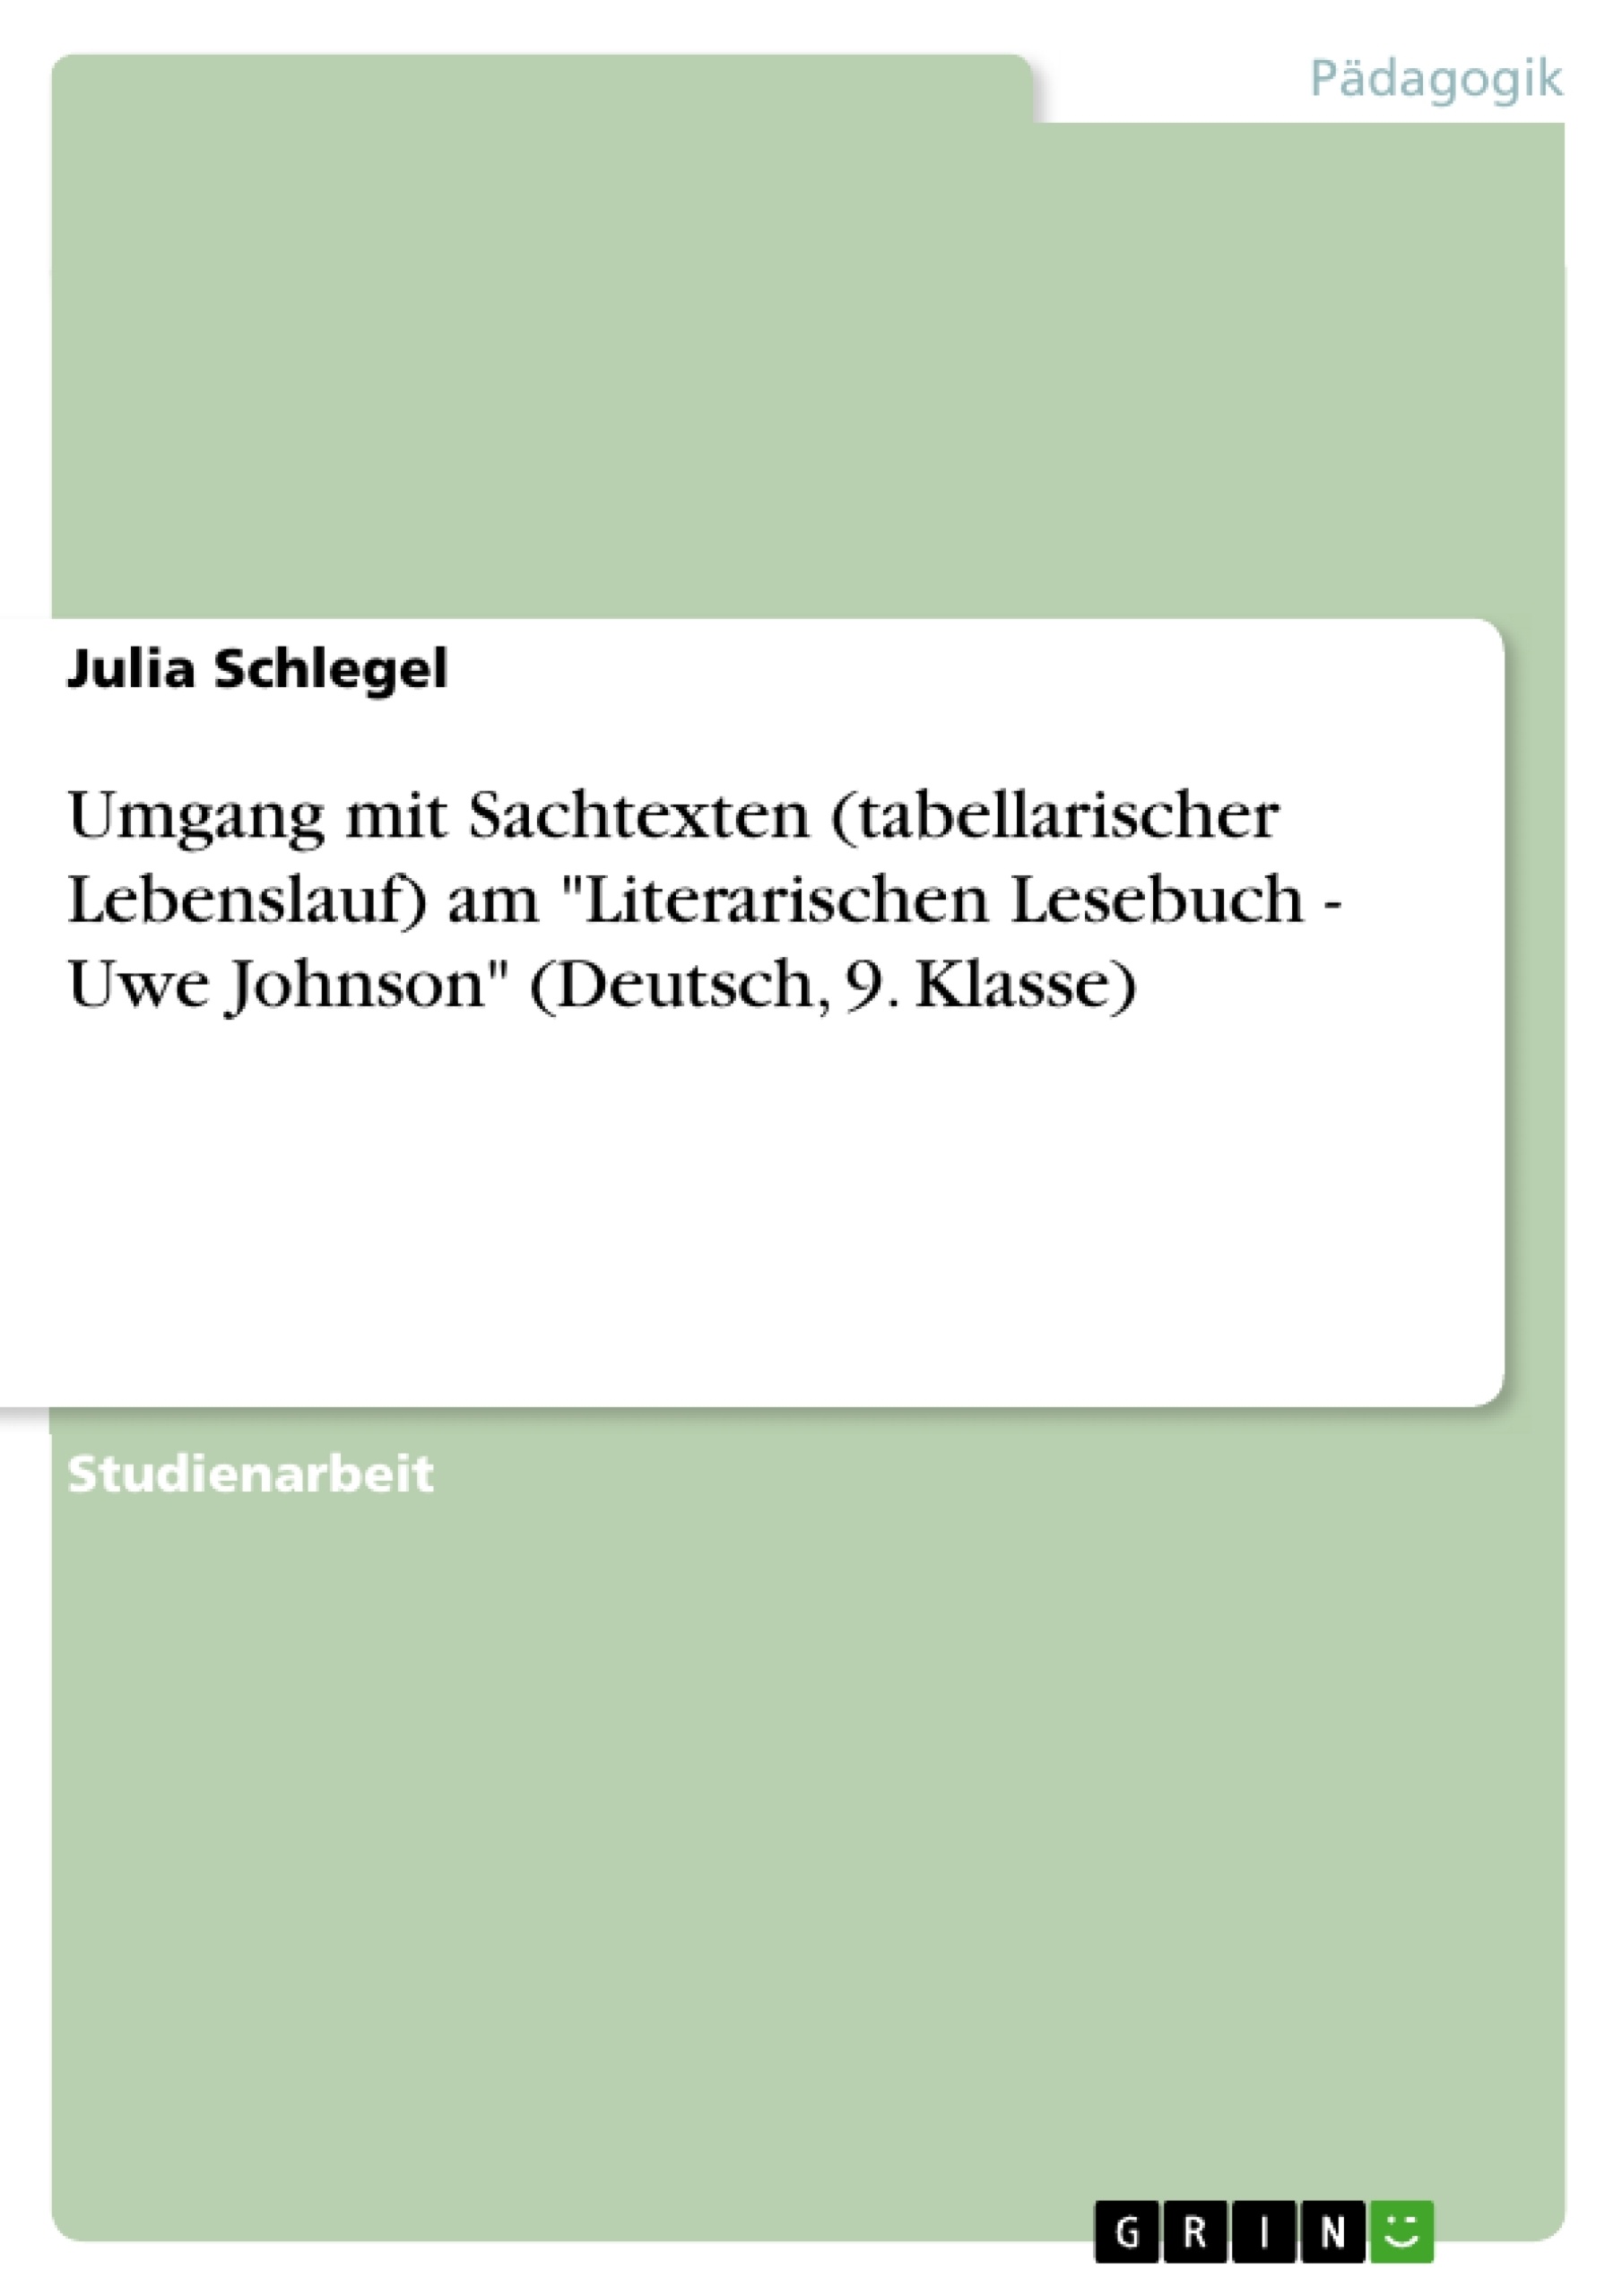 Titre: Umgang mit Sachtexten (tabellarischer Lebenslauf) am "Literarischen Lesebuch - Uwe Johnson" (Deutsch, 9. Klasse)